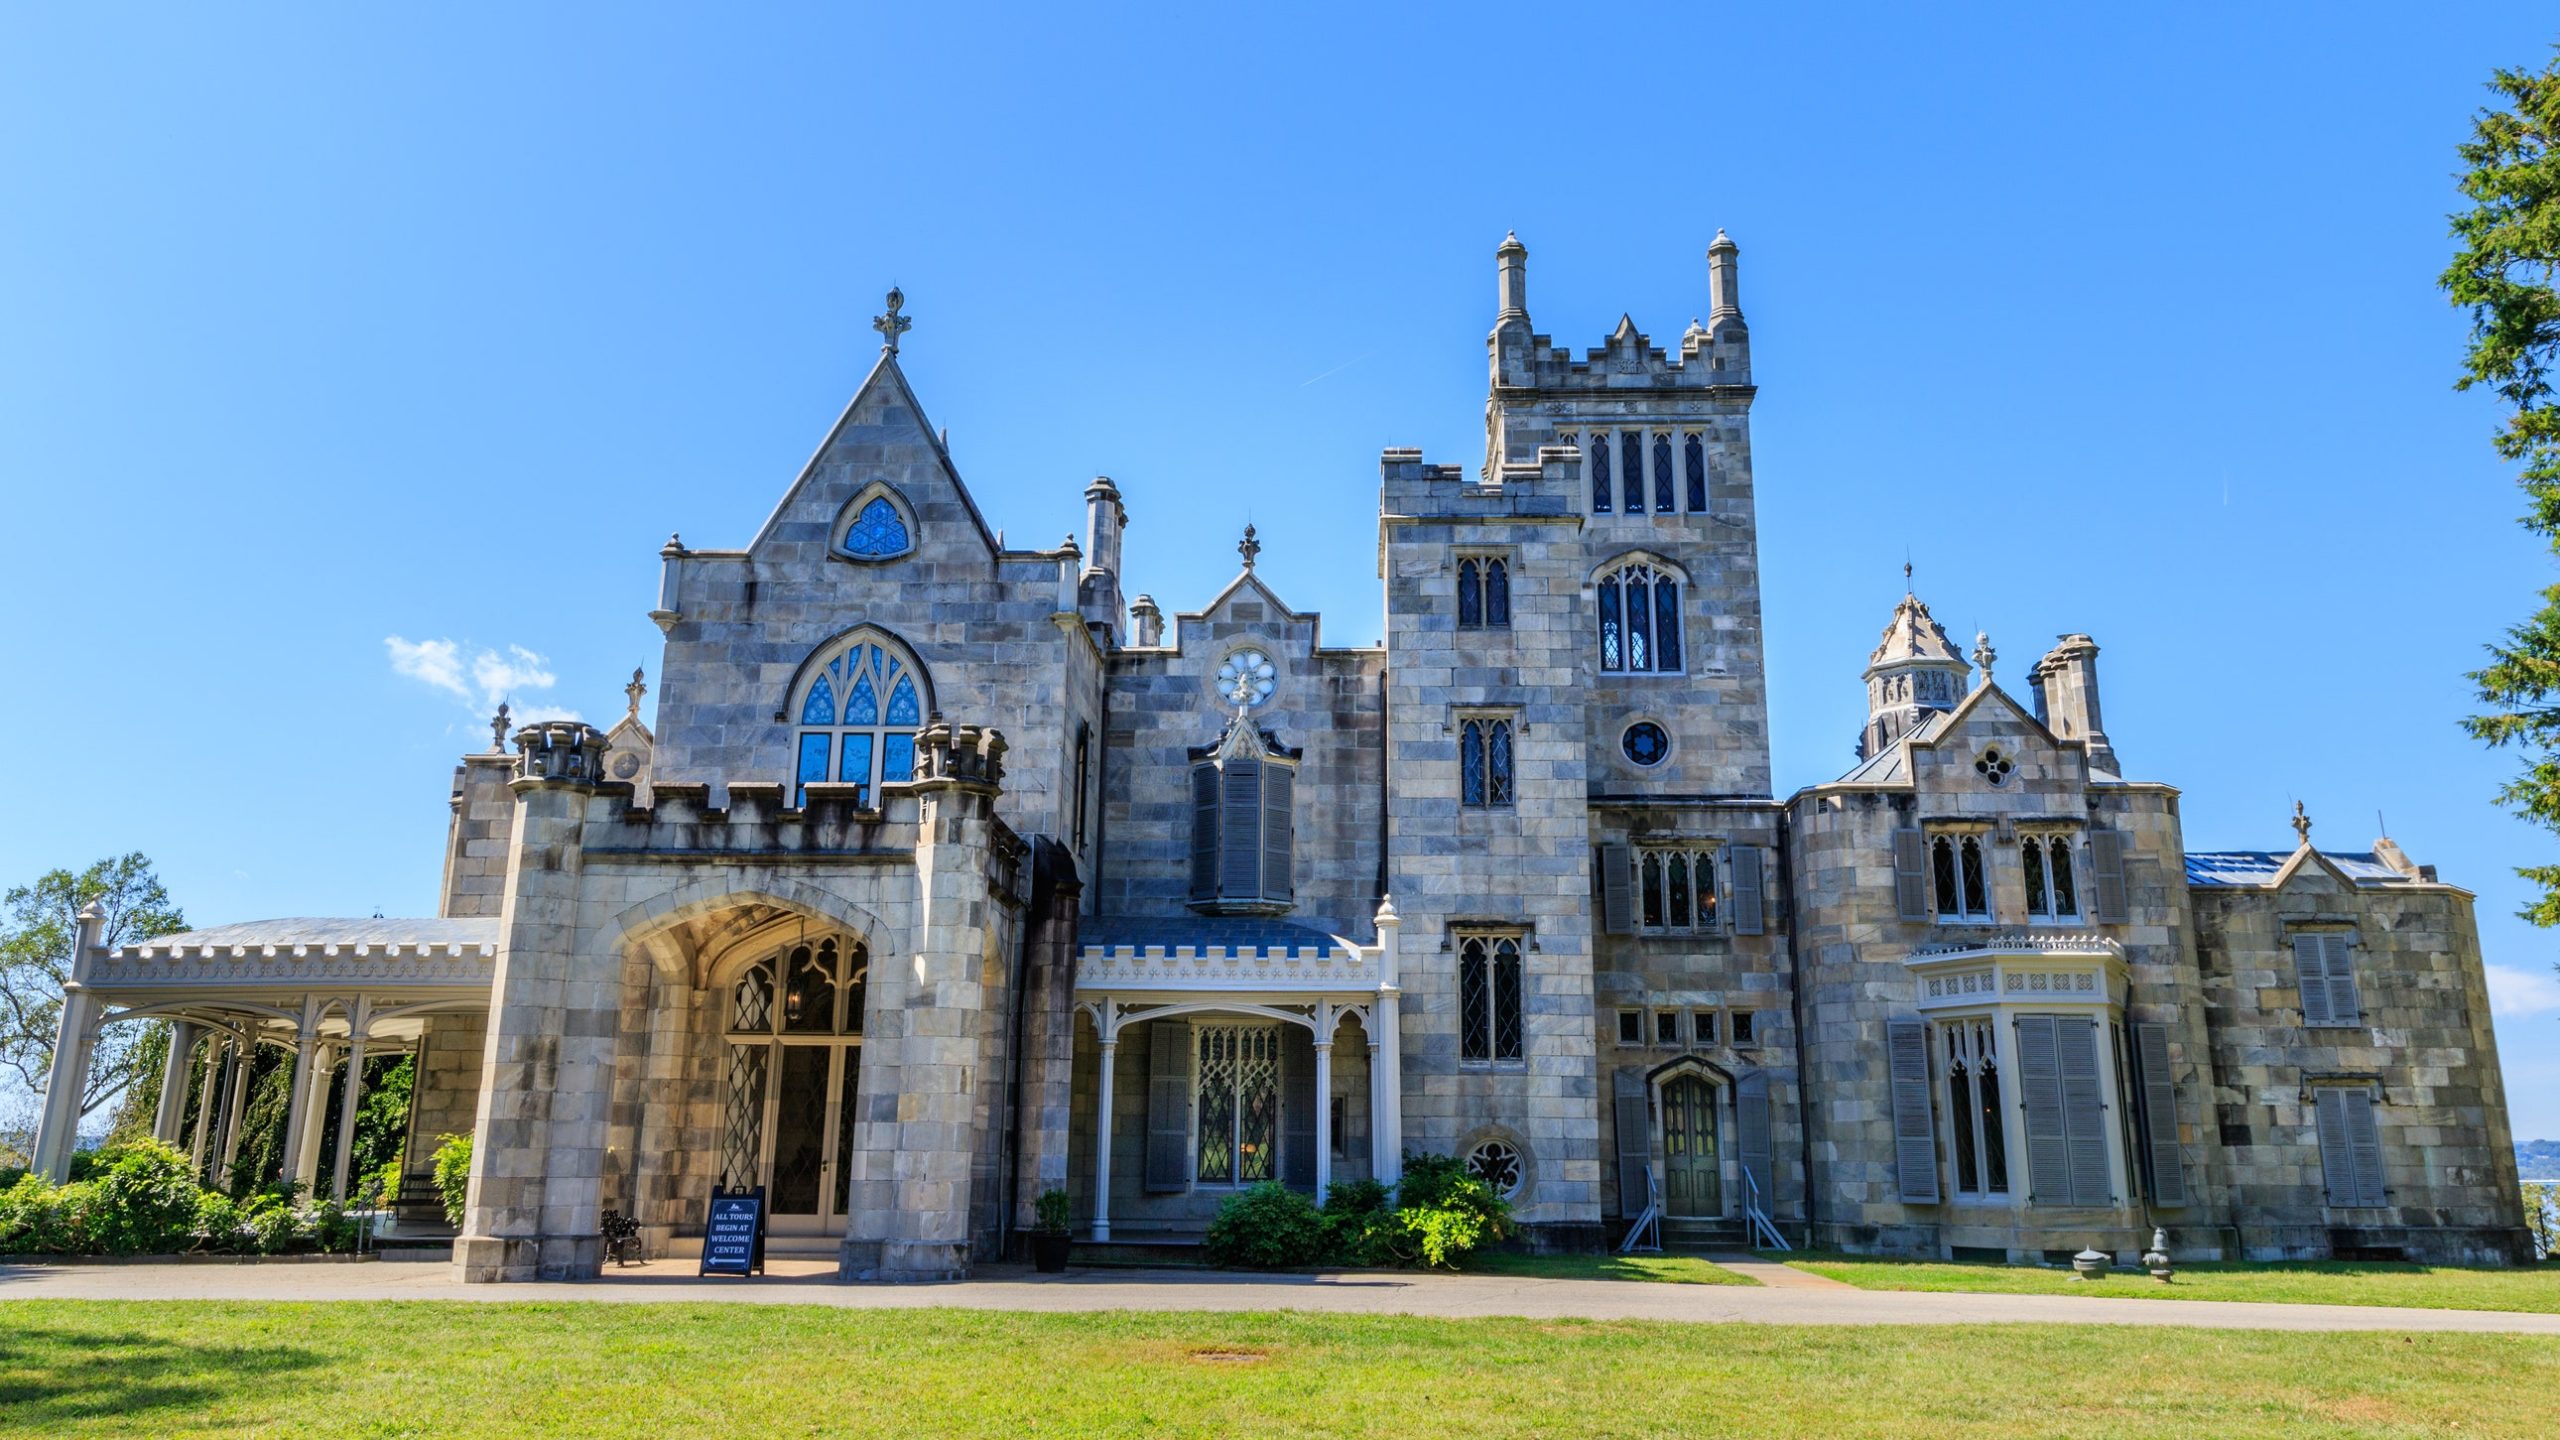 قلعه های زیبا: 18 قلعه برتر در ایالات متحده